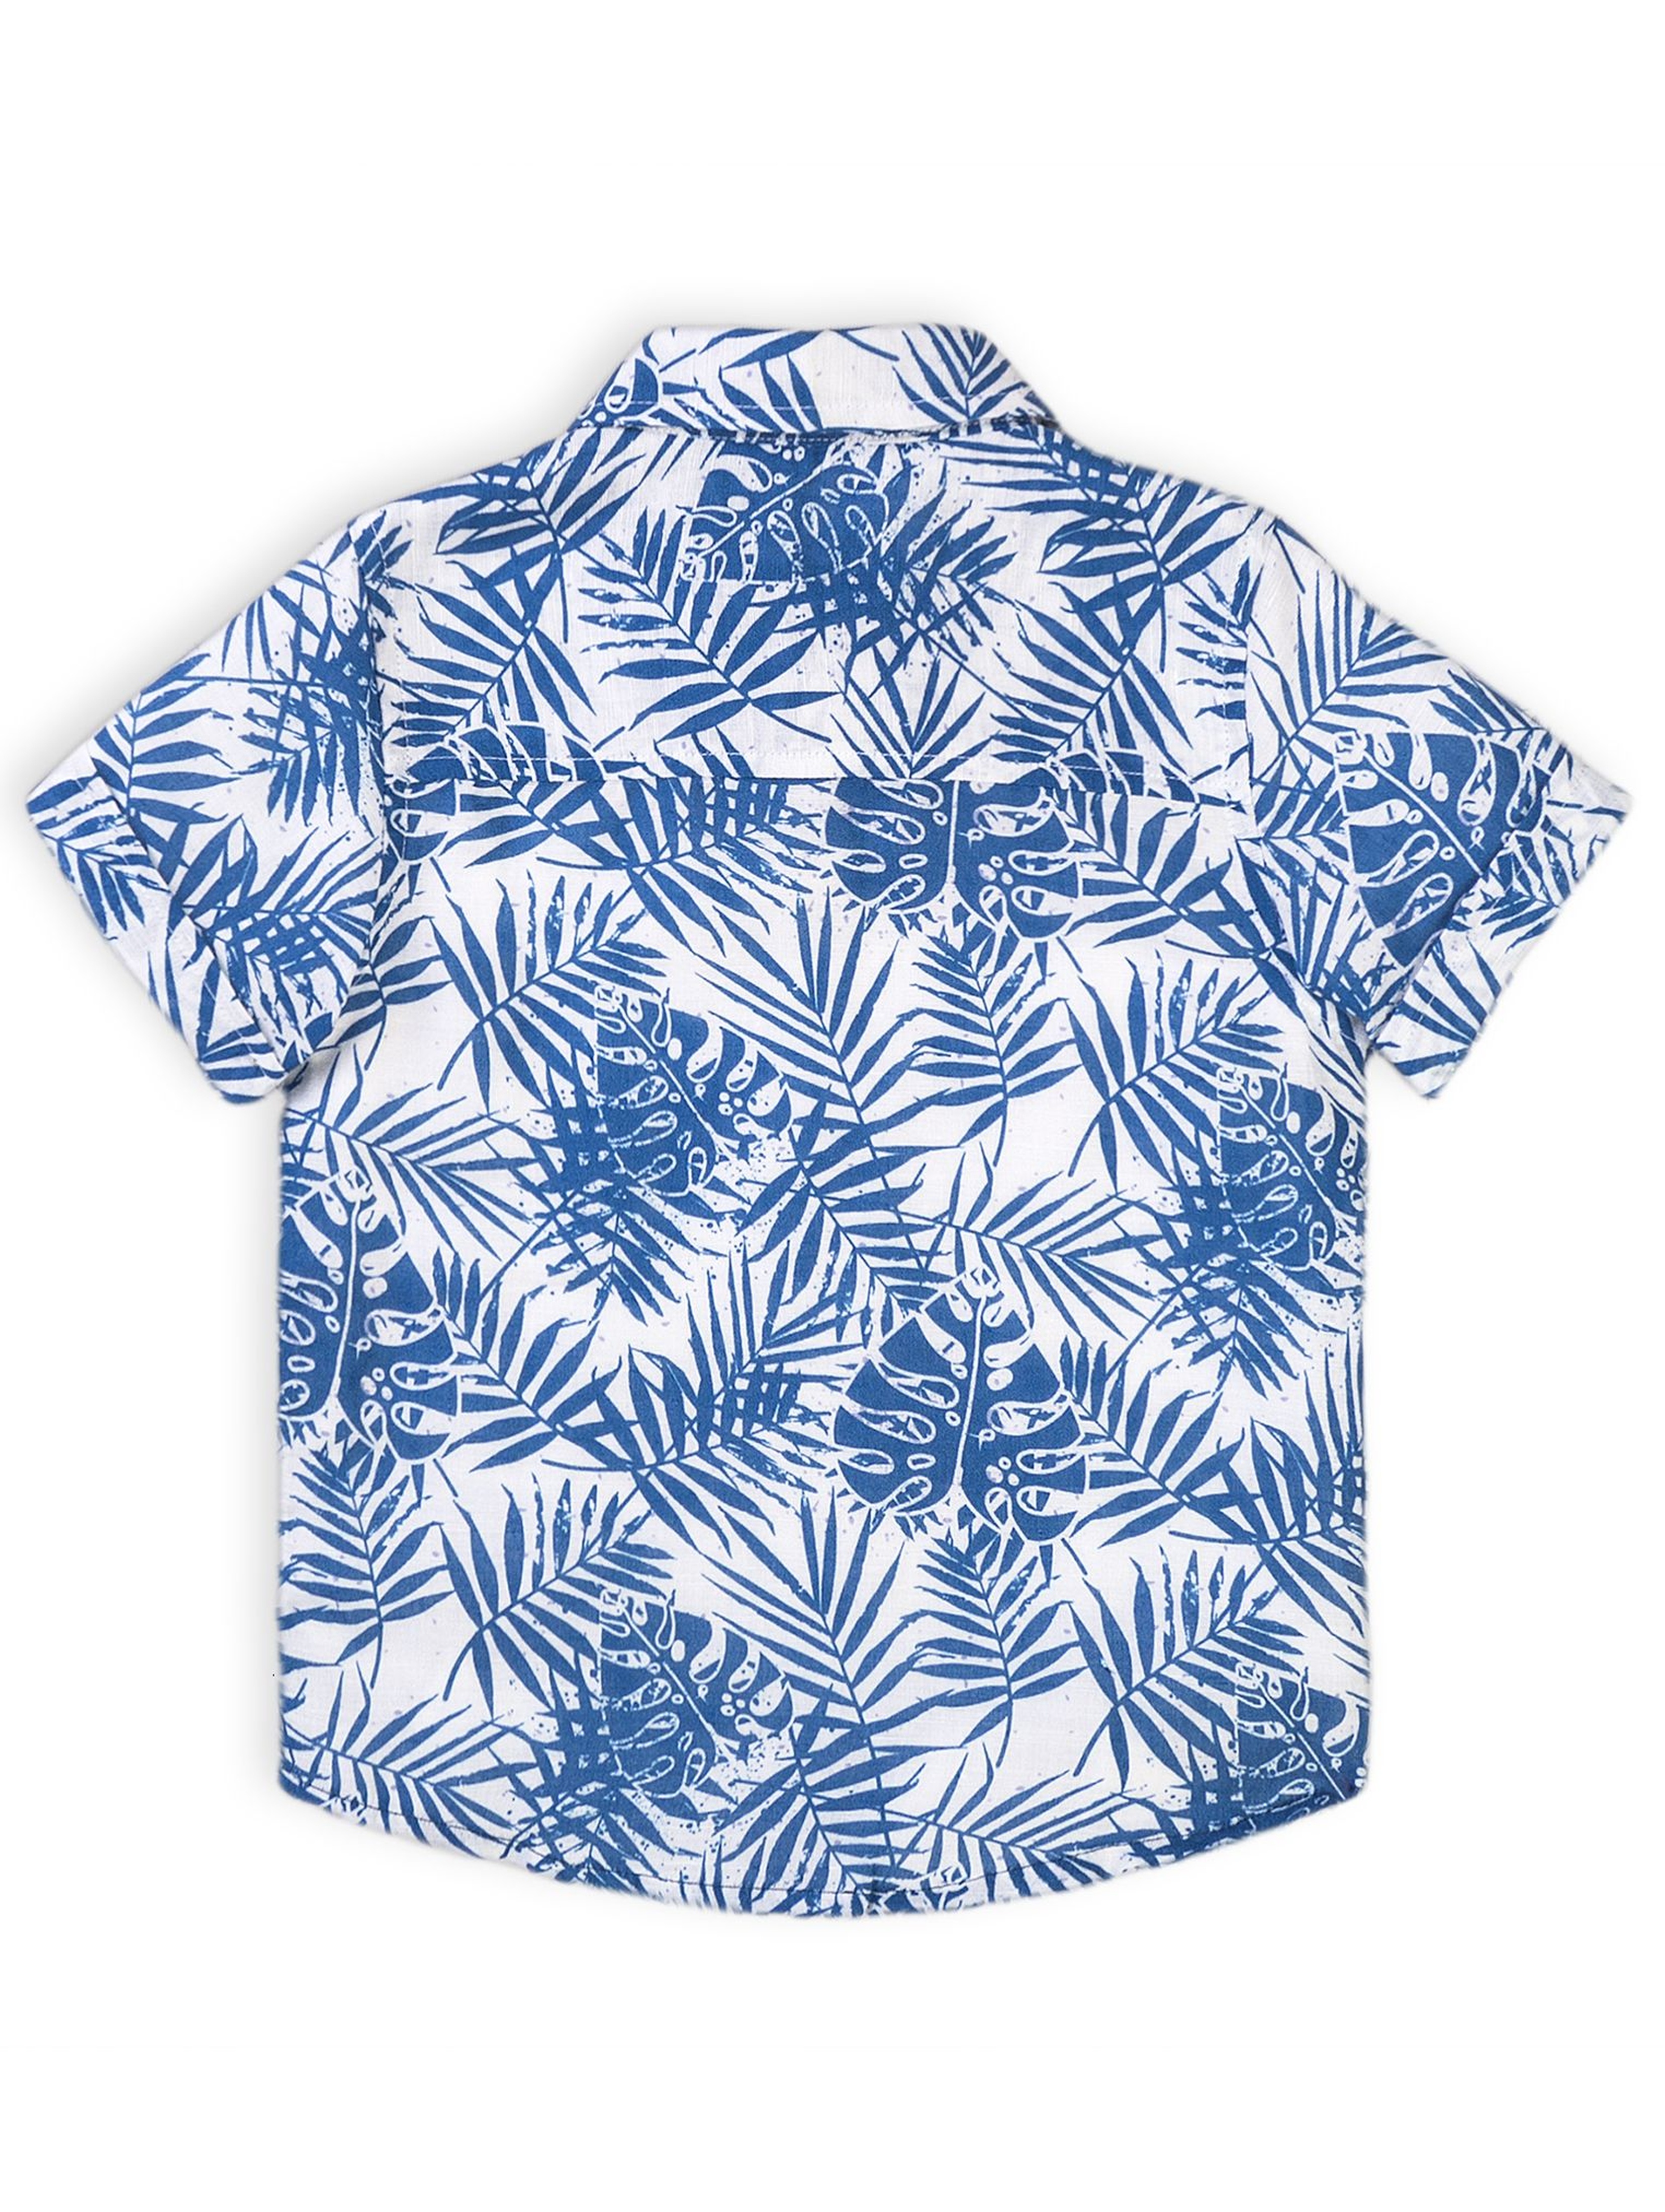 Koszula niemowlęca na lato- niebieskie liście